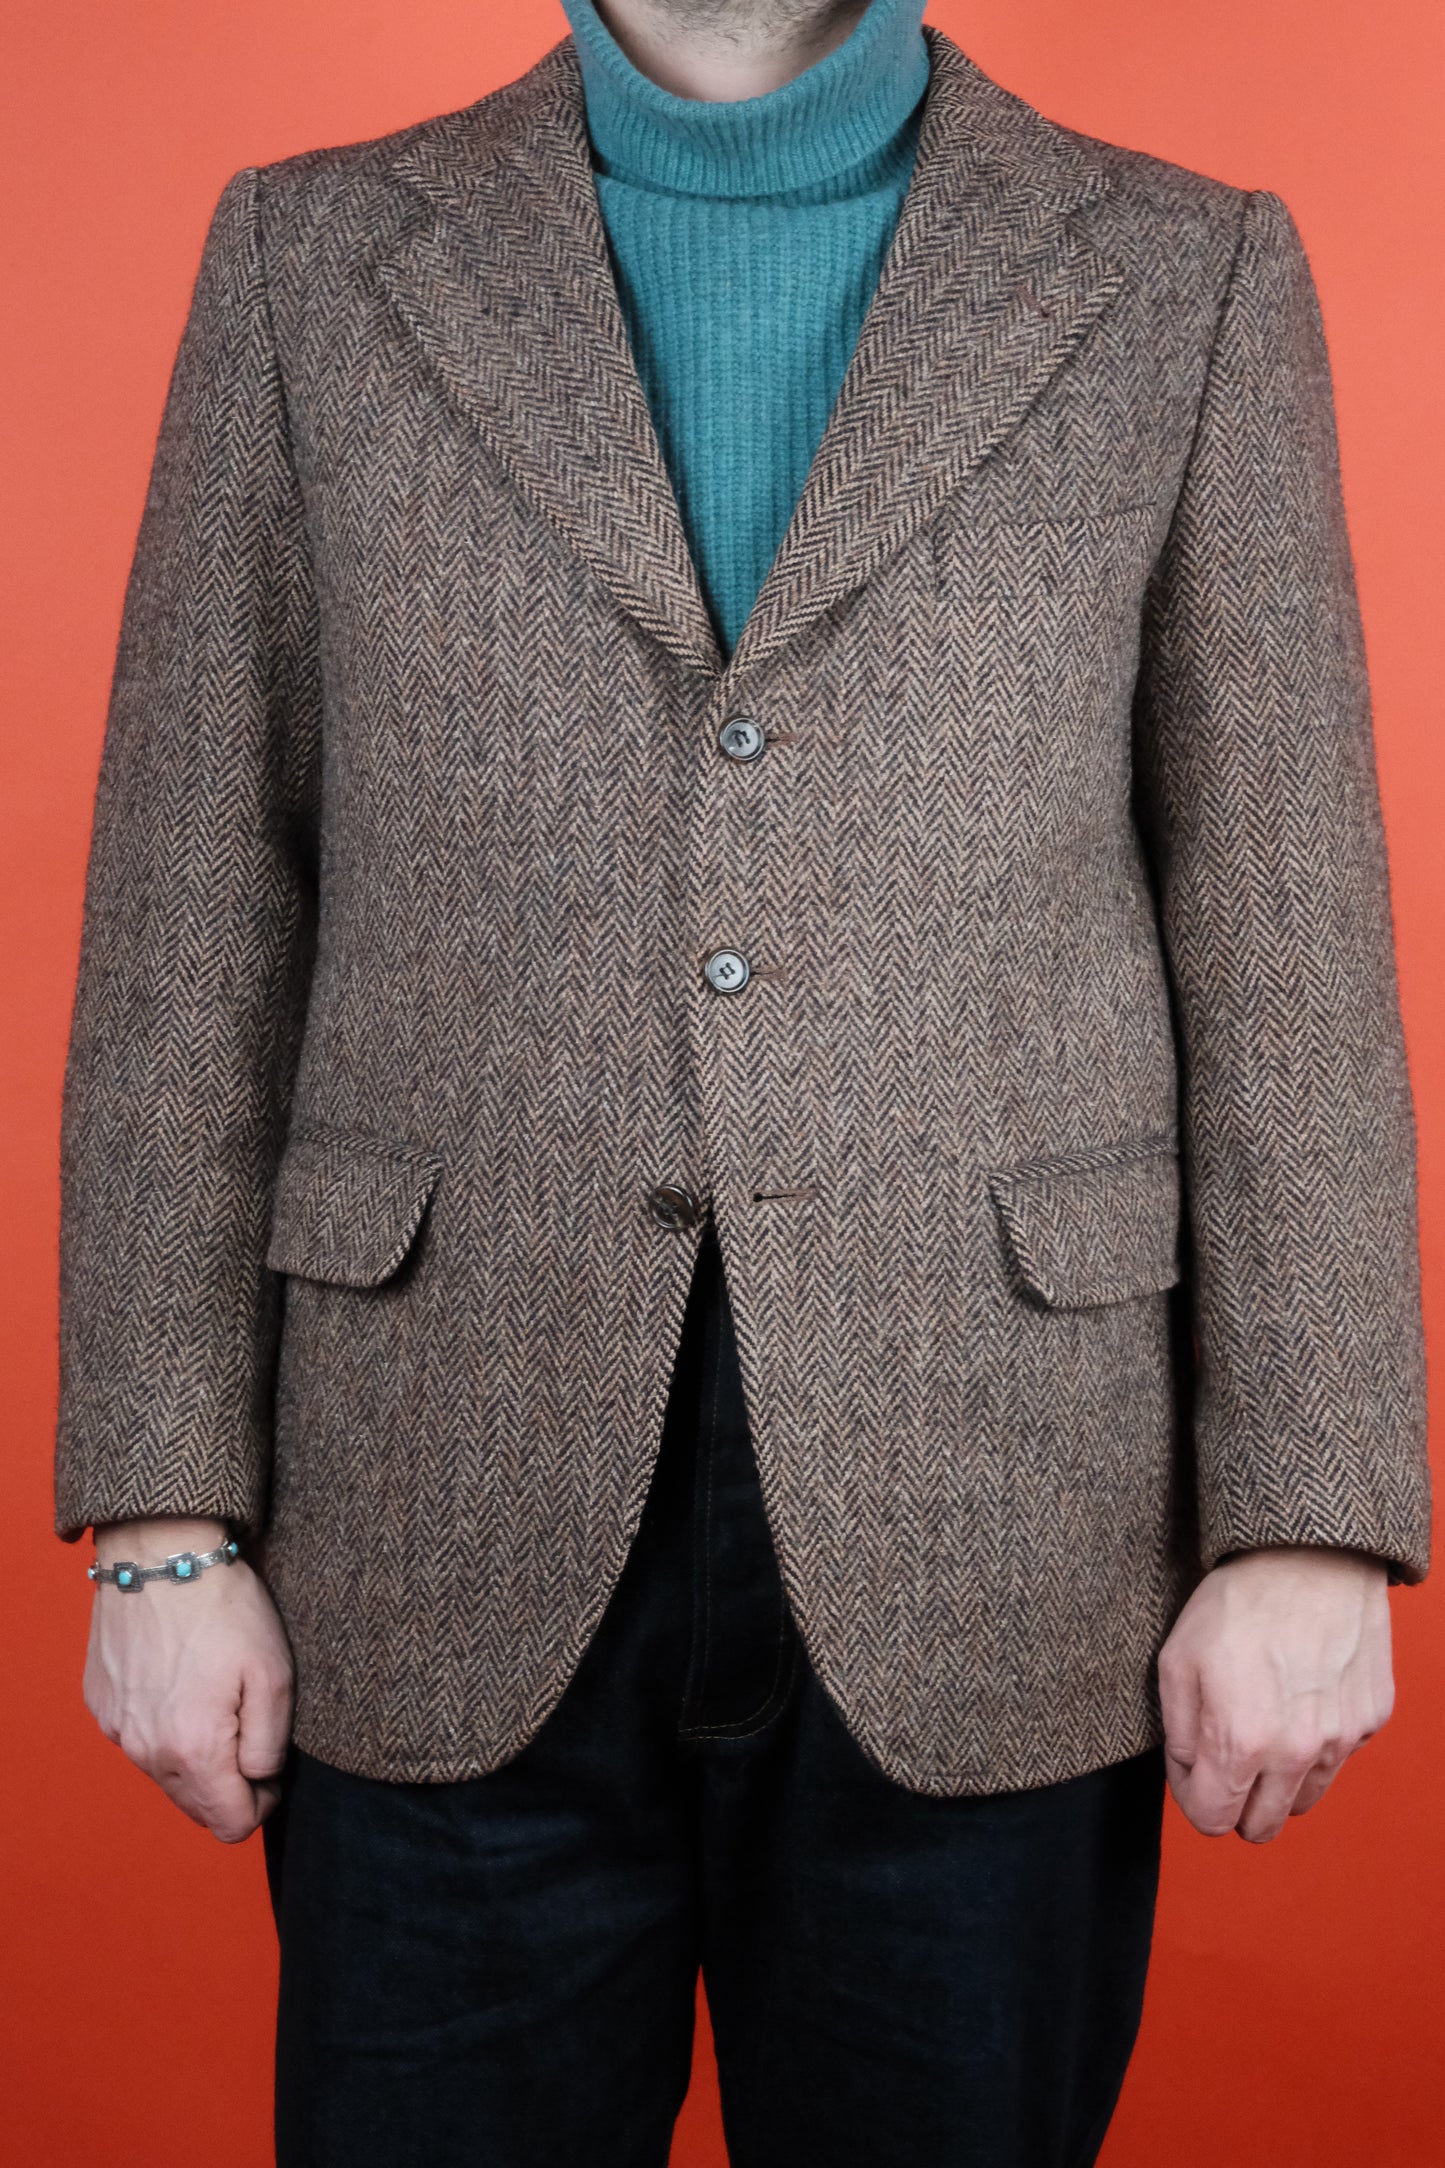 Herringbone Harris Tweed Wool Suit Jacket 'M' - vintage clothing clochard92.com